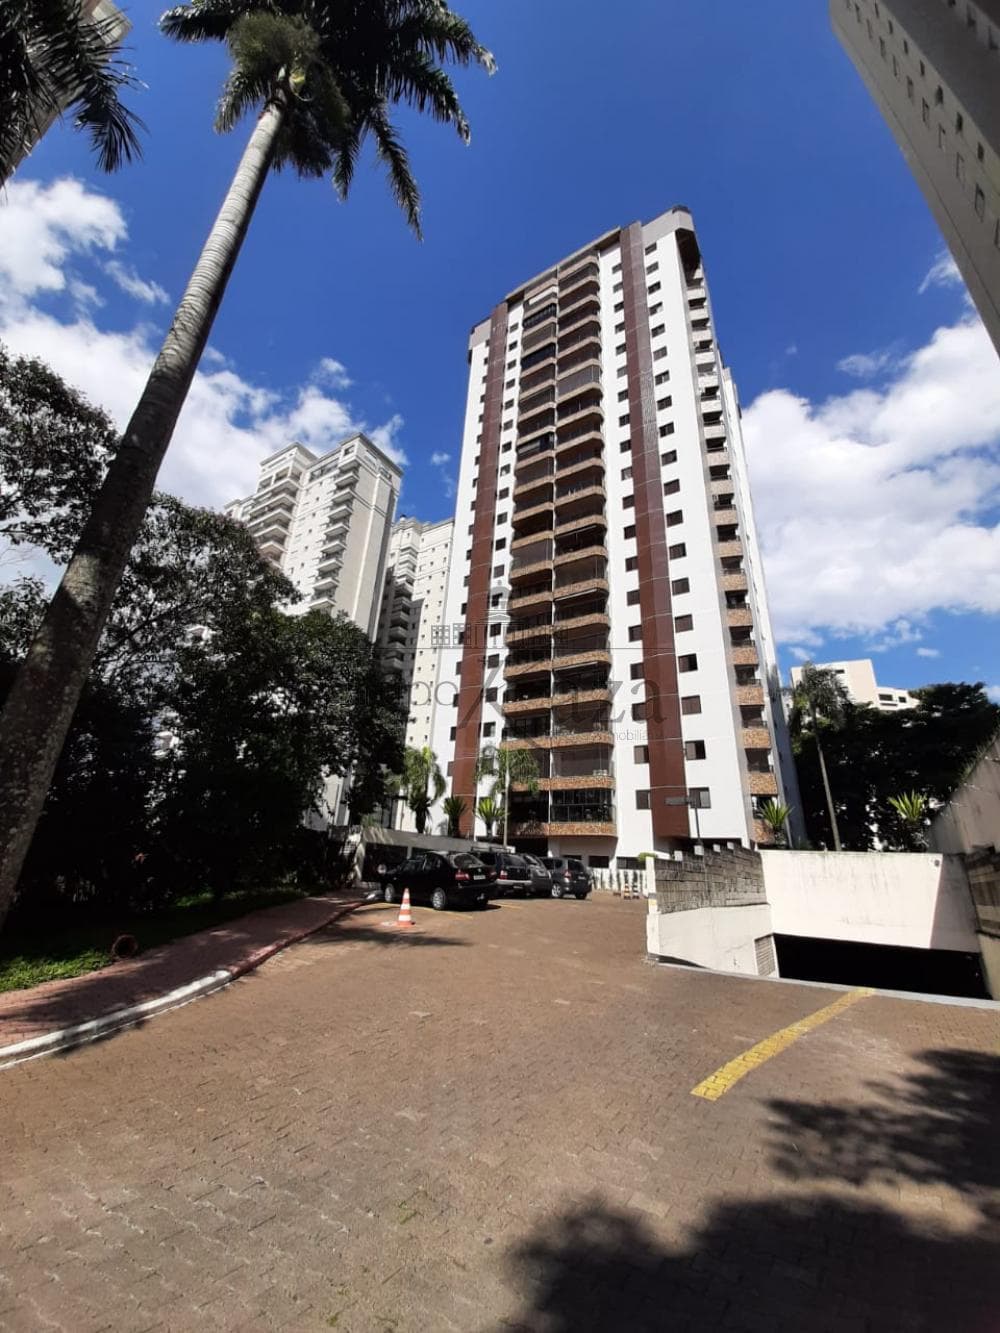 Foto 51 de Apartamento Padrão em Vila Ema, São José dos Campos - imagem 51